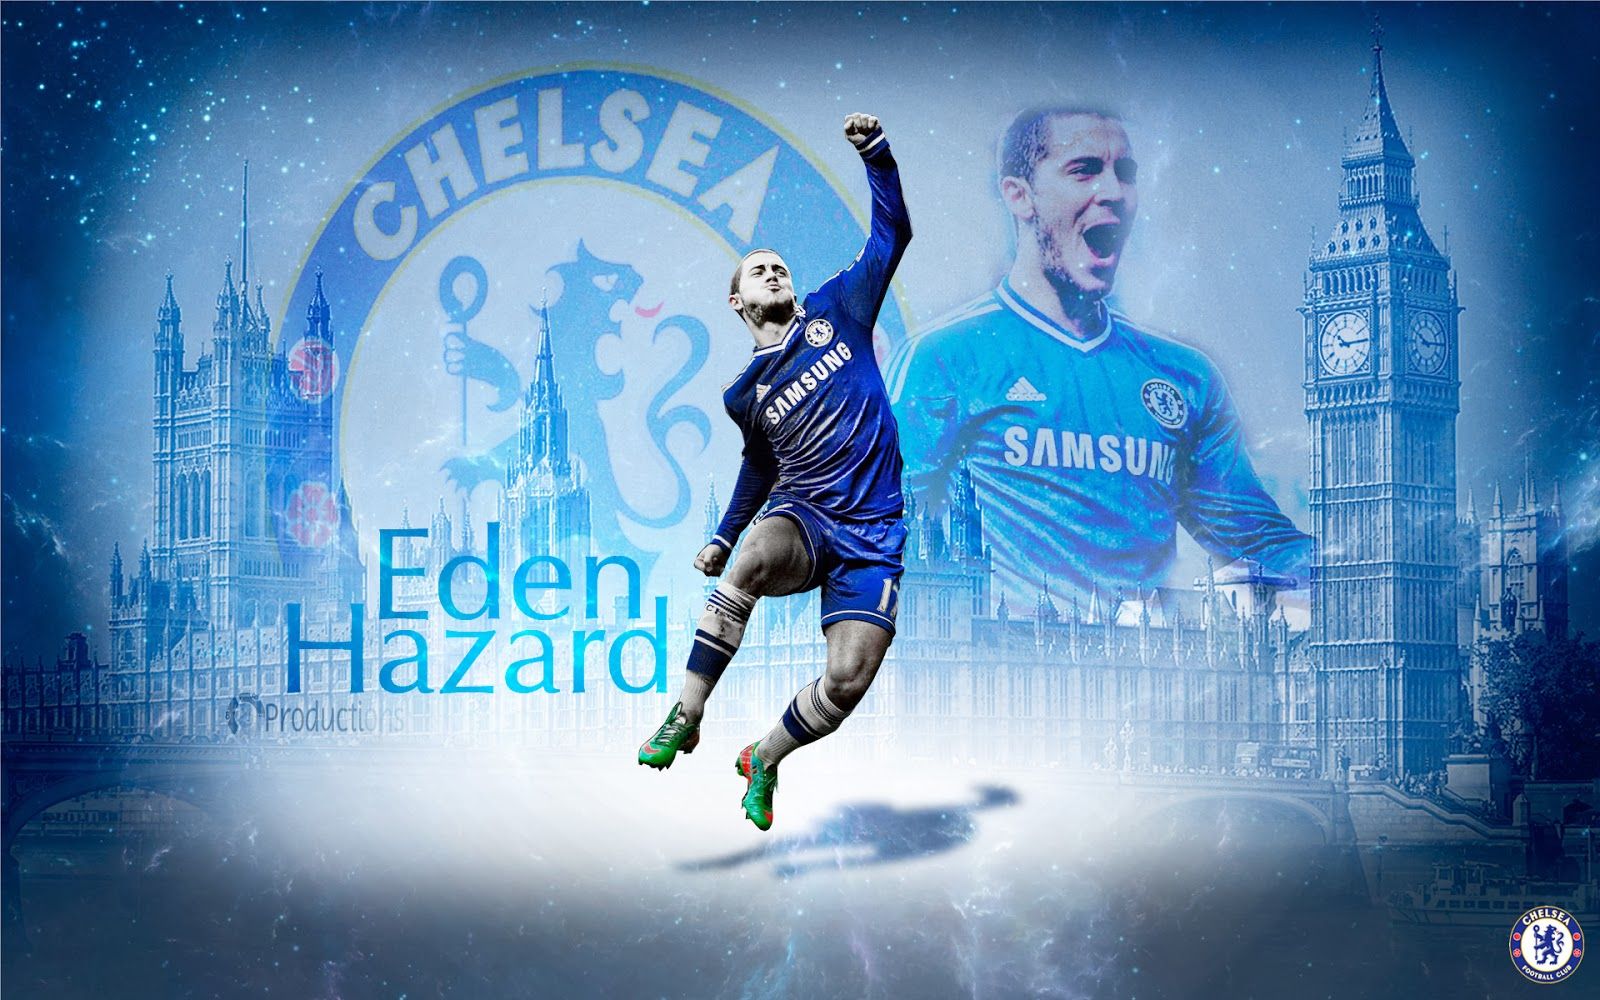 Eden Hazard Wallpaper Chelsea